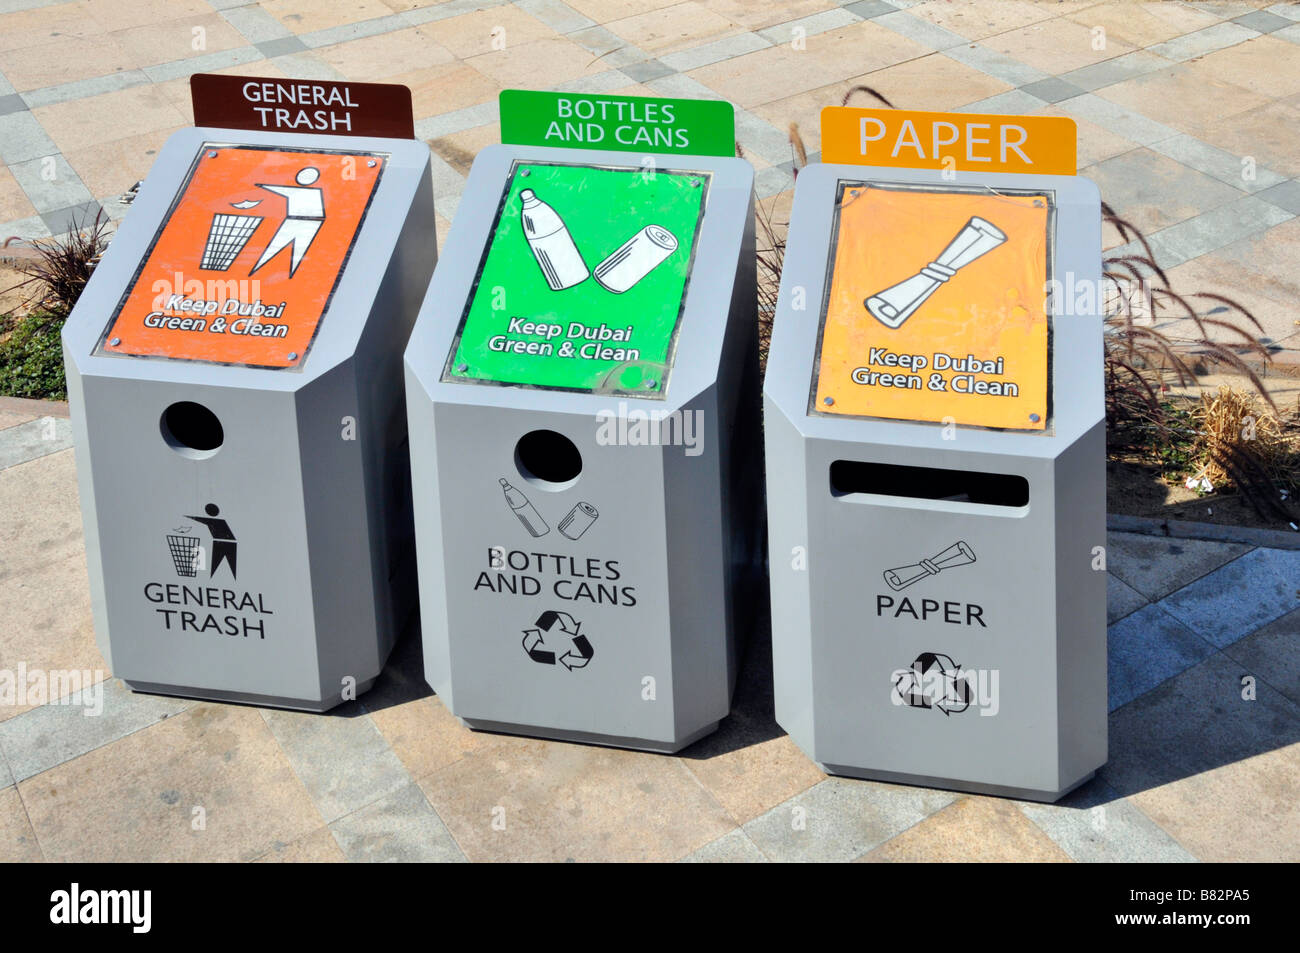 Dubai pavimento tres papeleras de reciclaje de basura para botellas, latas y papel basura general cada tolva codificadas por color Foto de stock